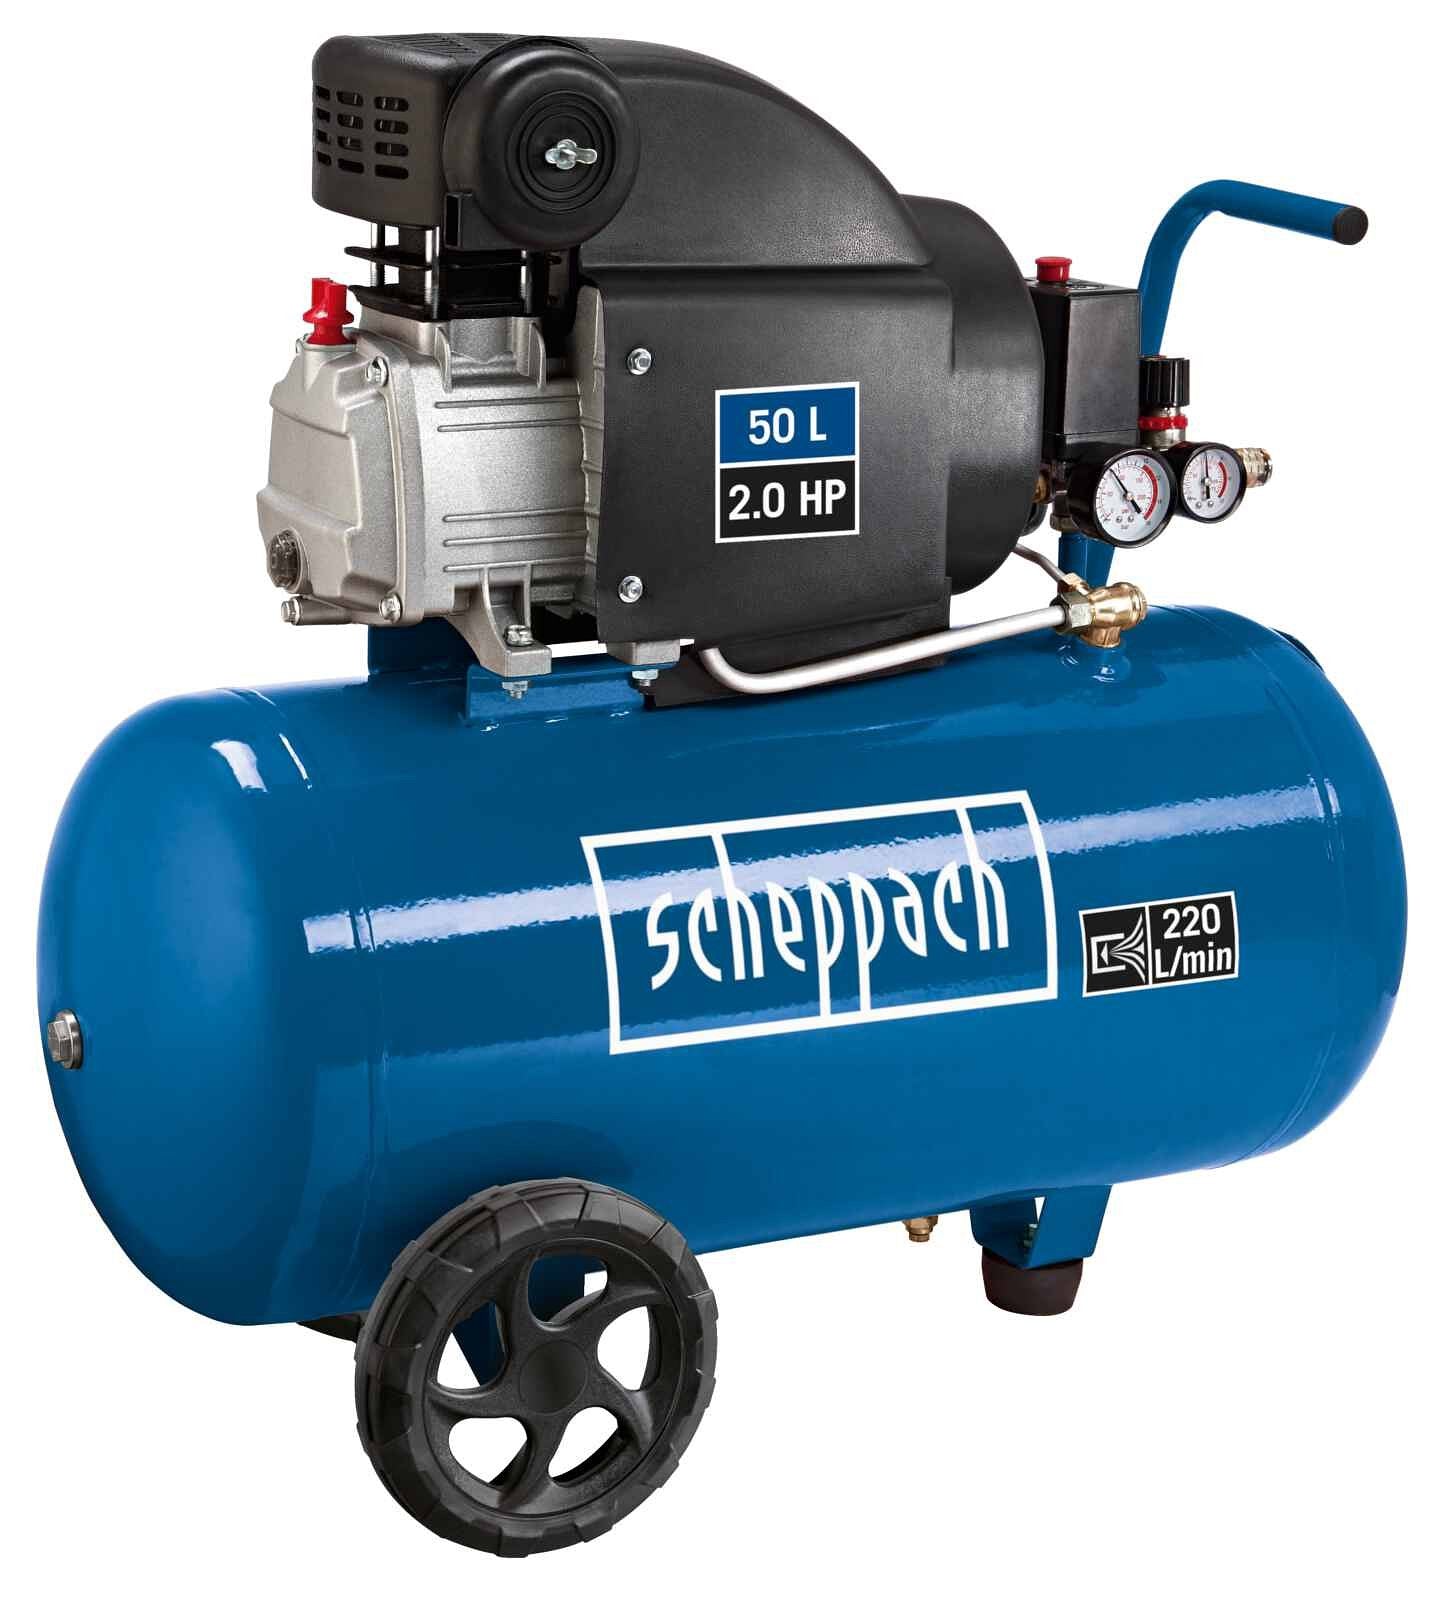 Scheppach Compressor HC54 - 1500W - 50L